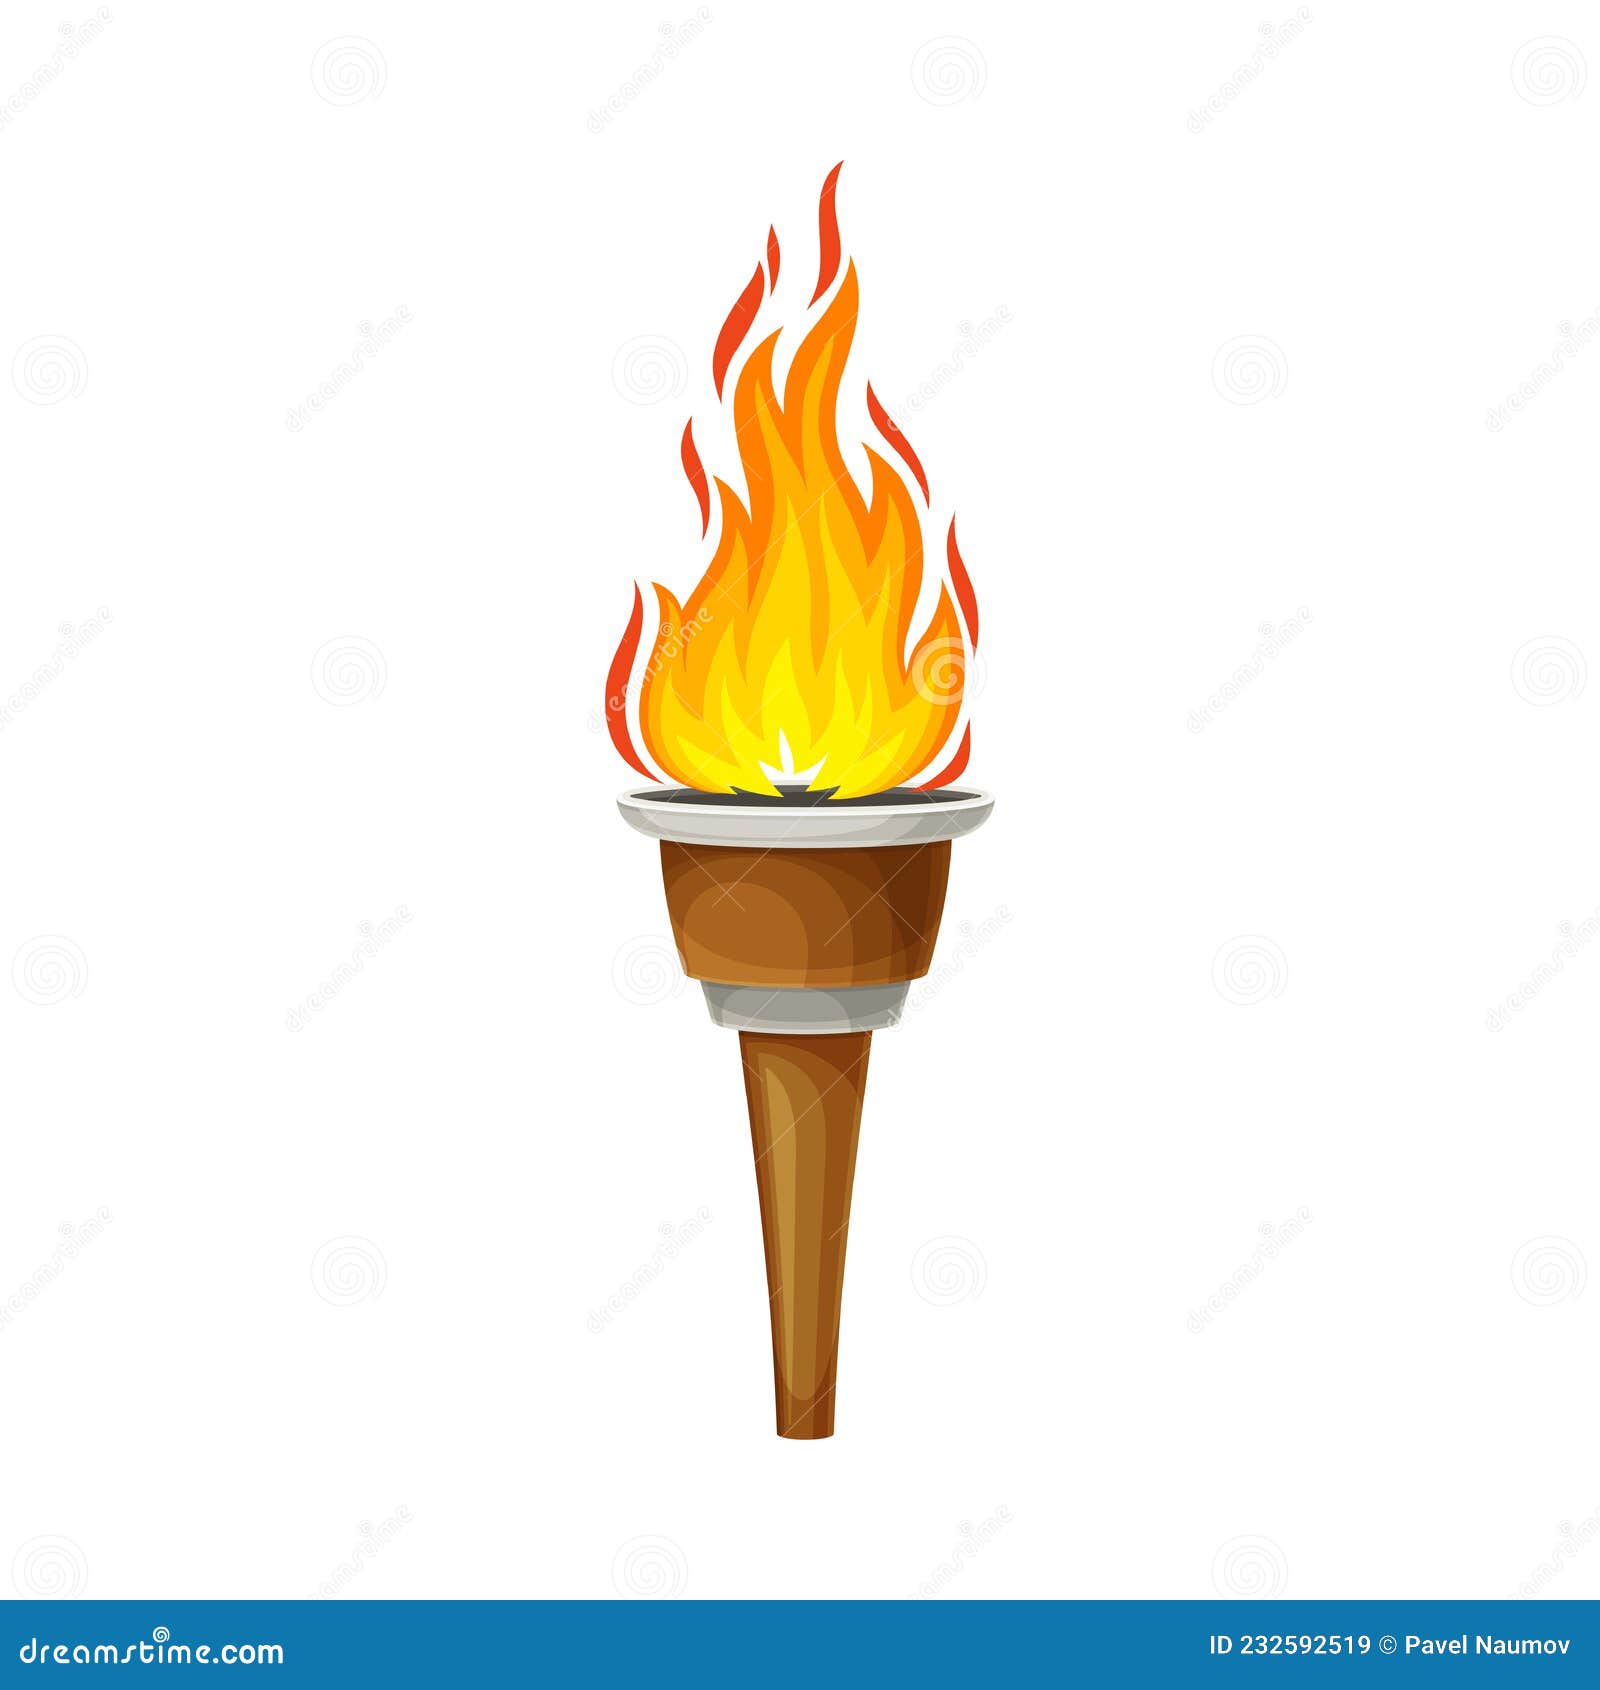 Una antorcha de madera con un fuego ardiente. llama brillante y chispas.